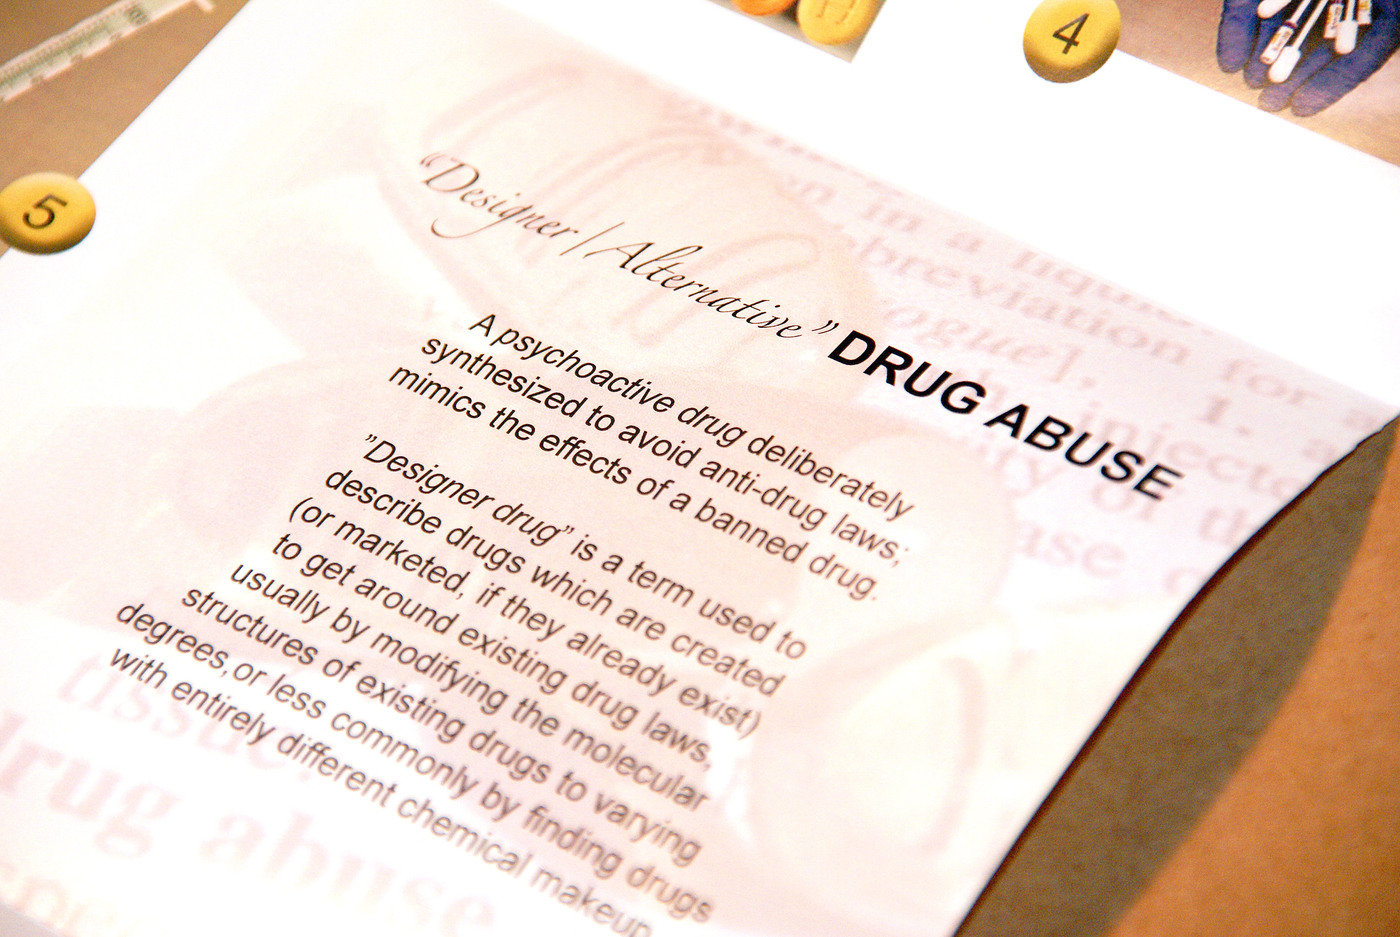 Finland banned a number of designer drugs